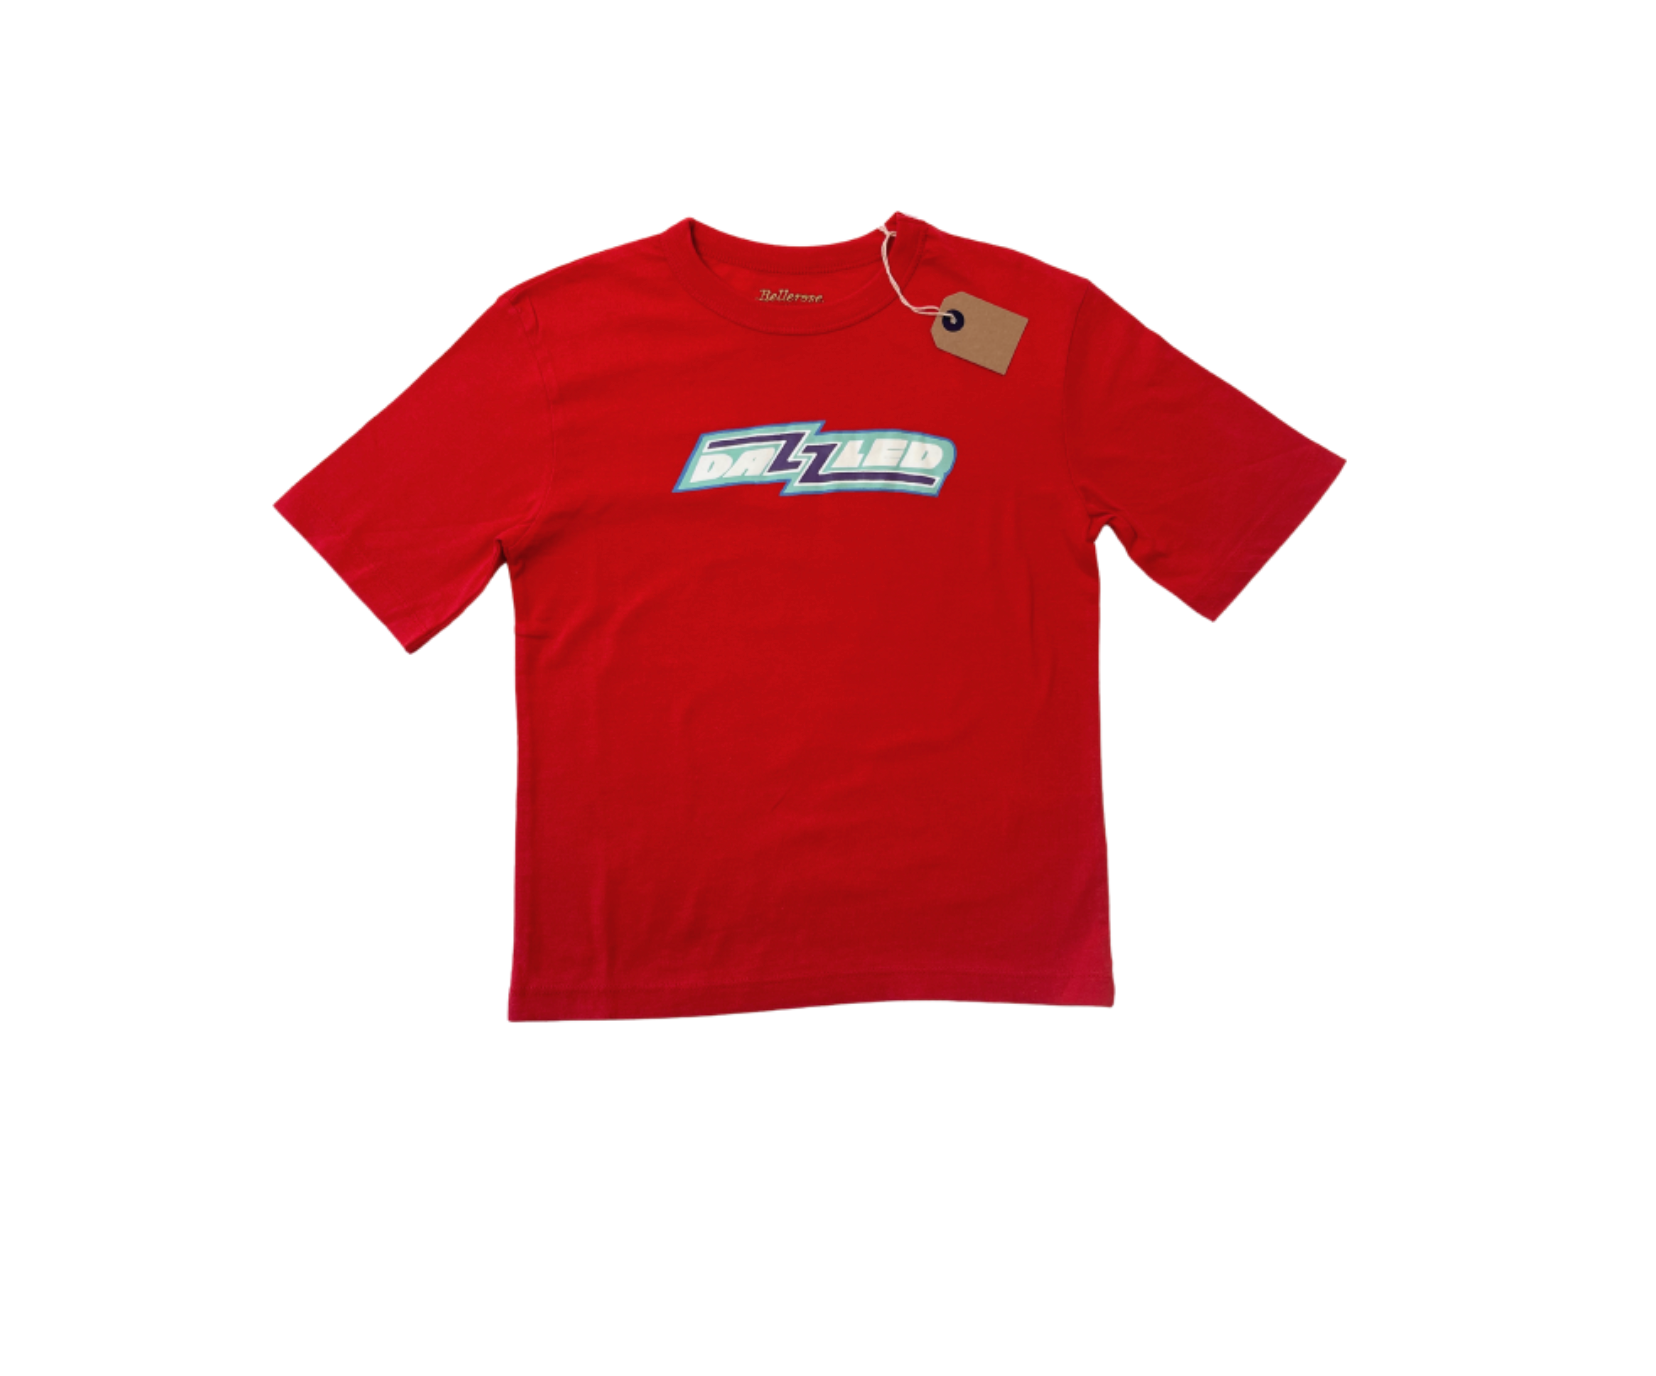 BELLEROSE - T-shirt rouge "Dazzled" - 6 ans